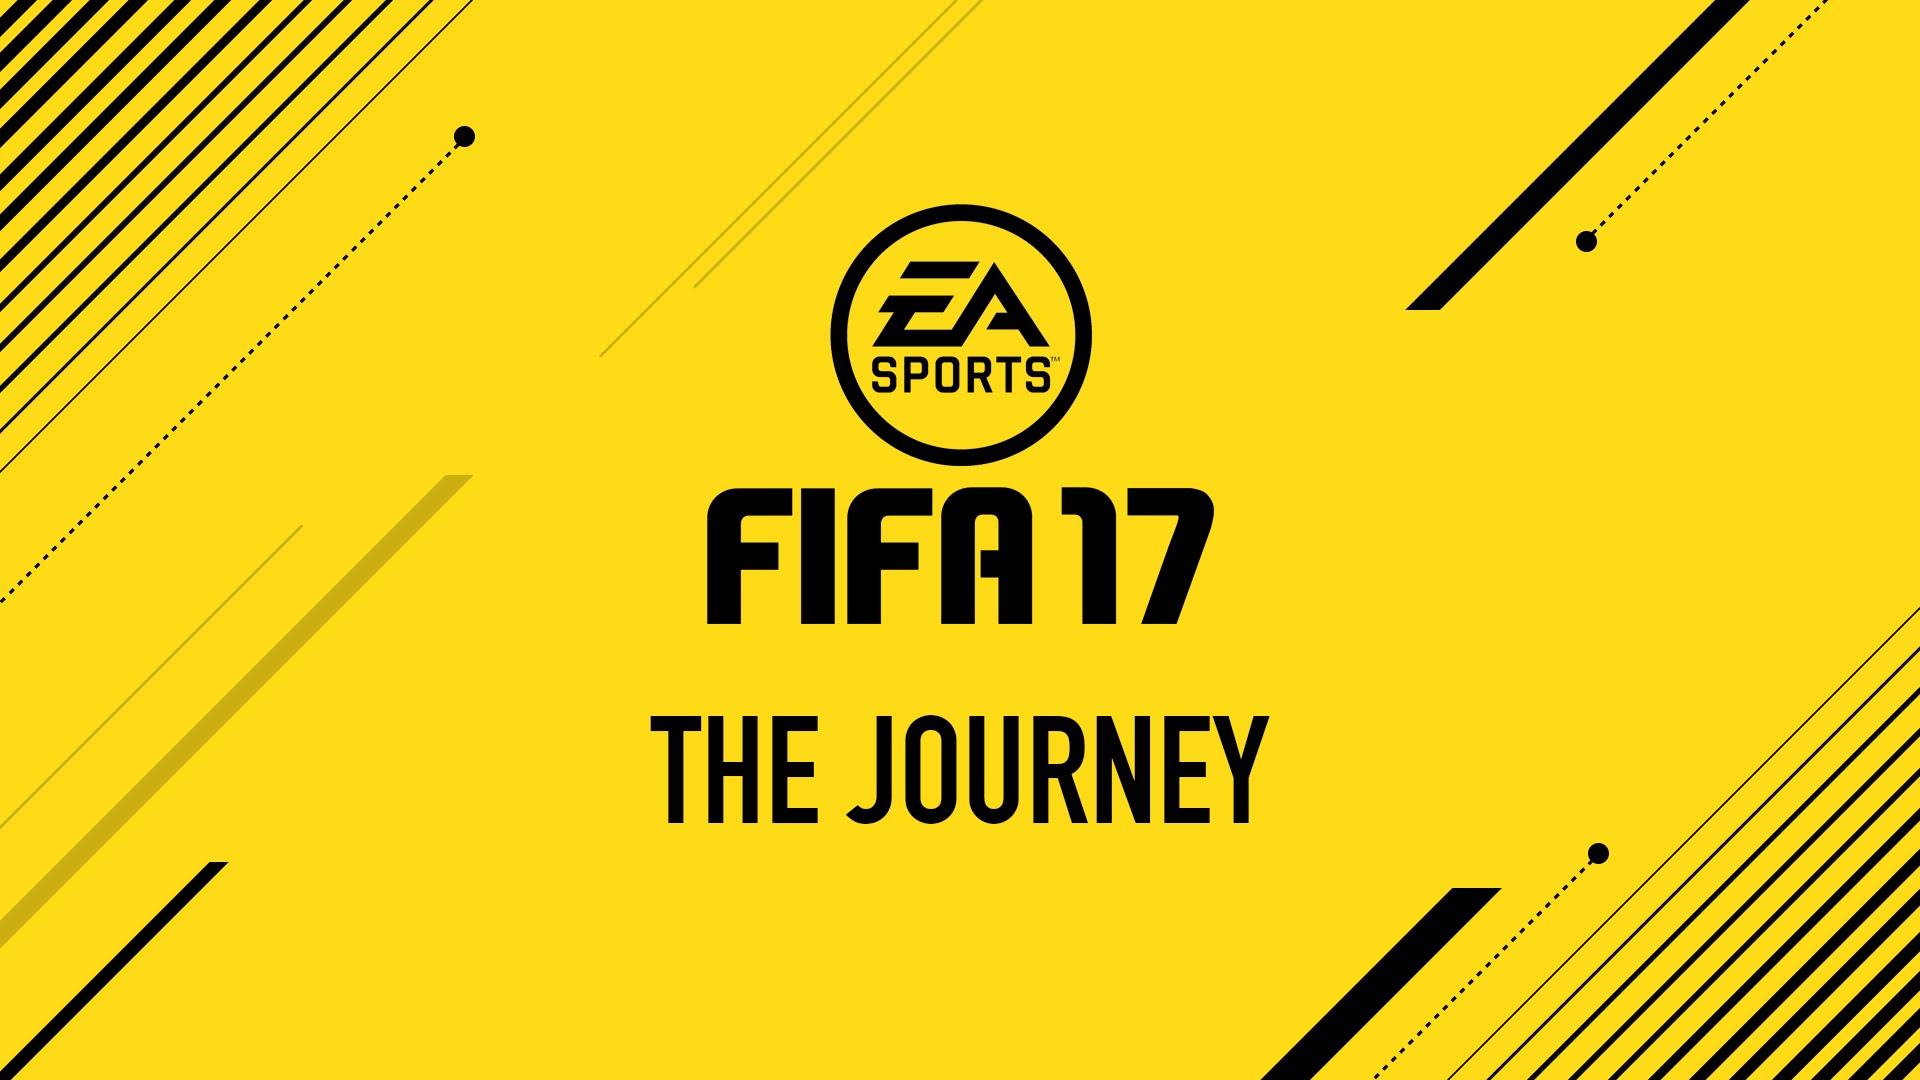 Importanti novità per la modalità The Journey di FIFA 17!